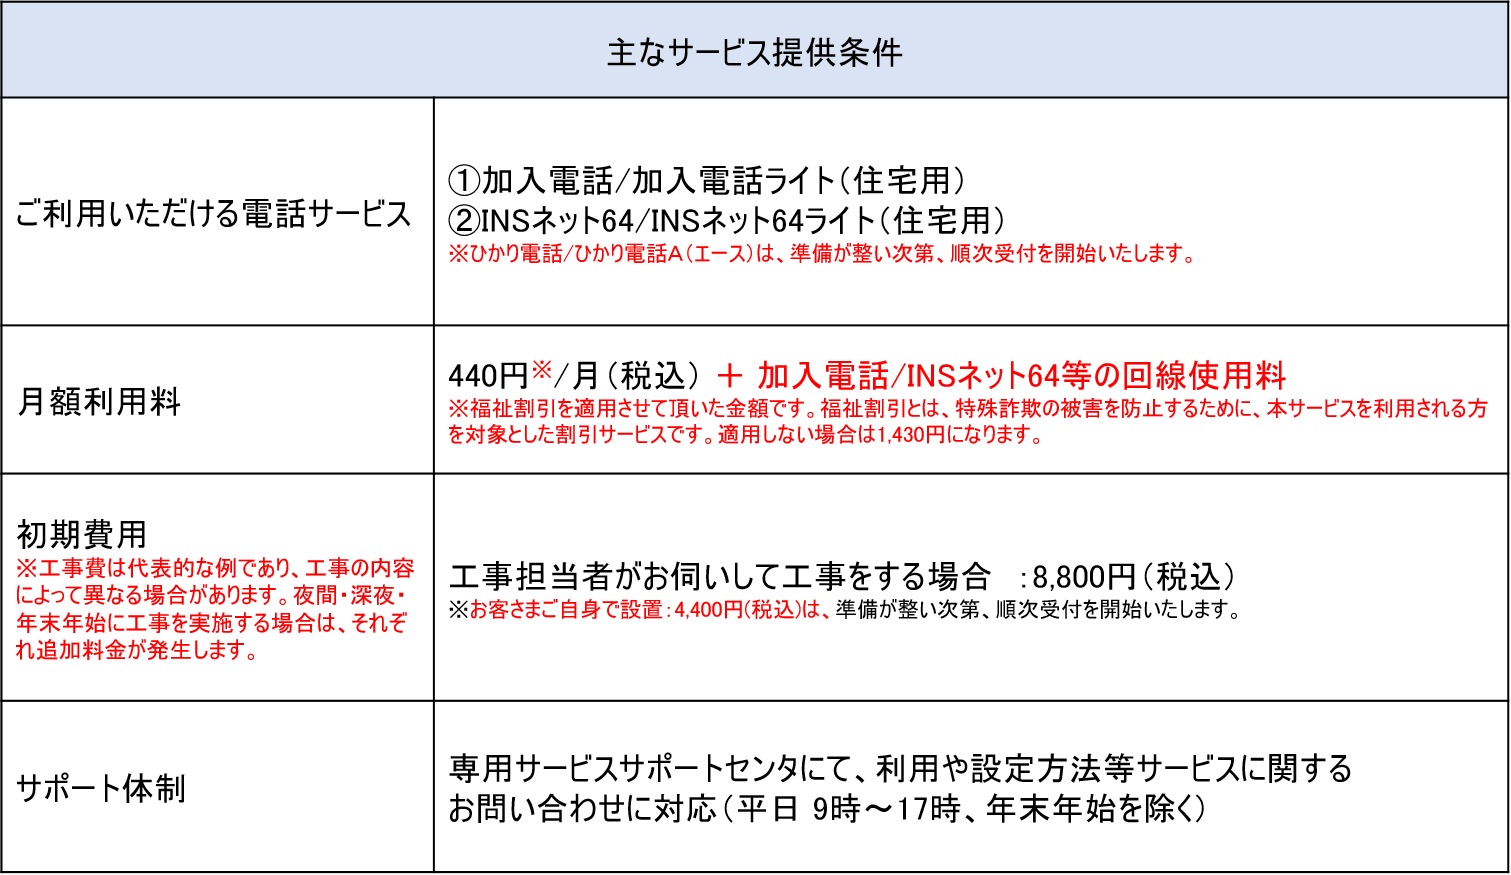 特殊詐欺対策サービスの提供開始について 西日本電信電話株式会社のプレスリリース